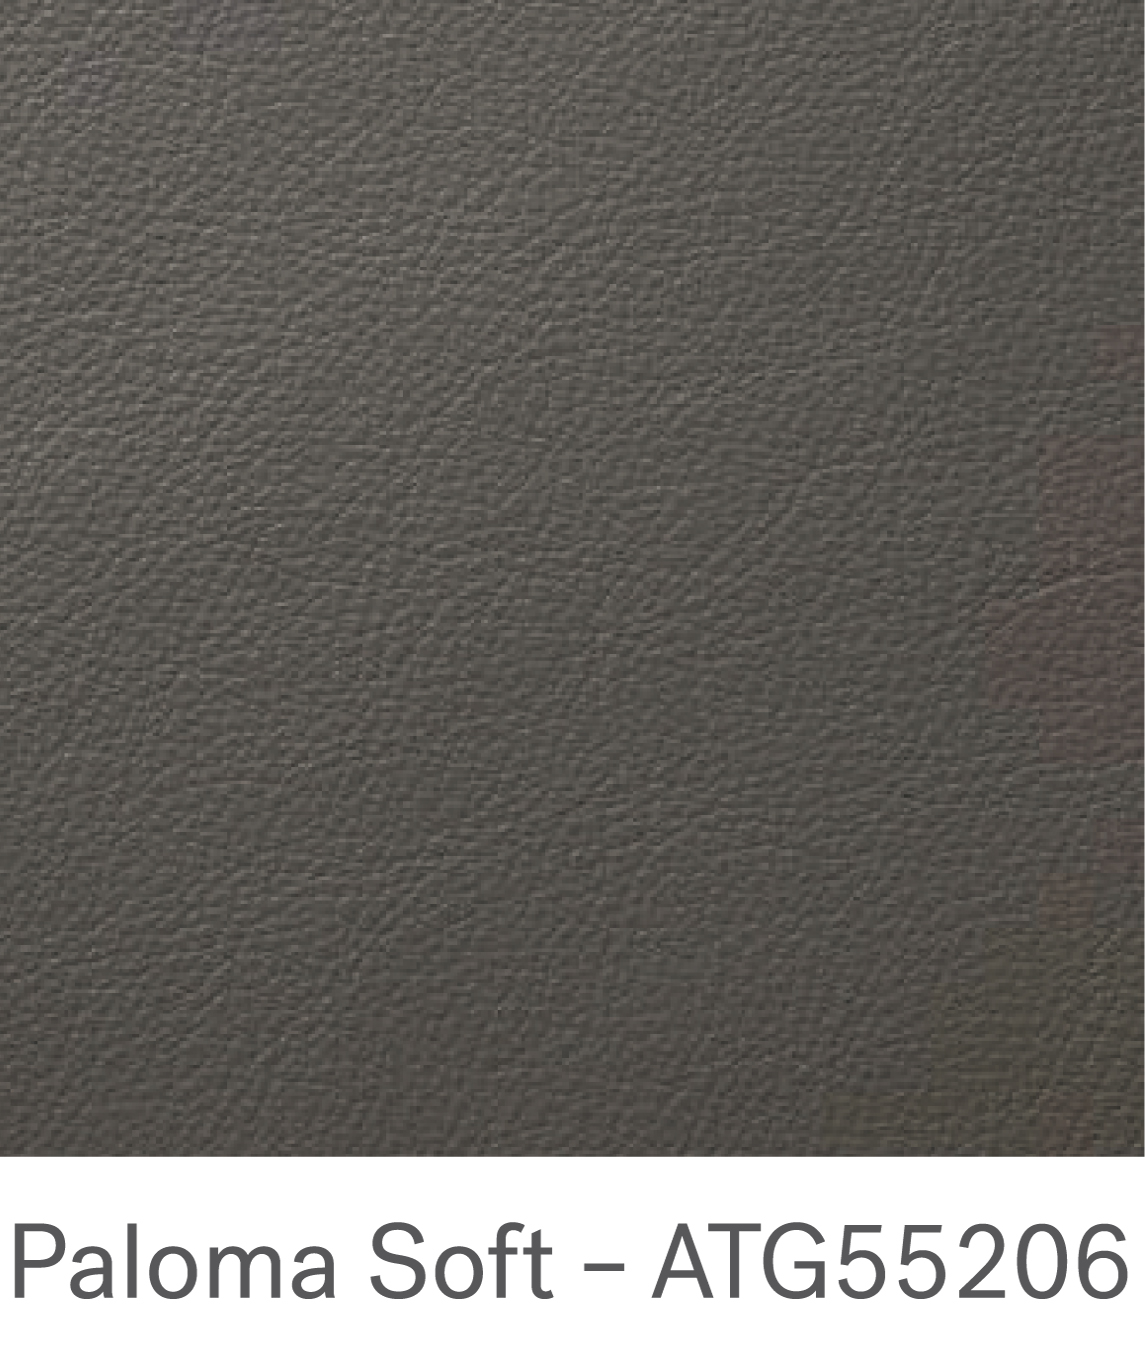 Paloma soft – ATG55206